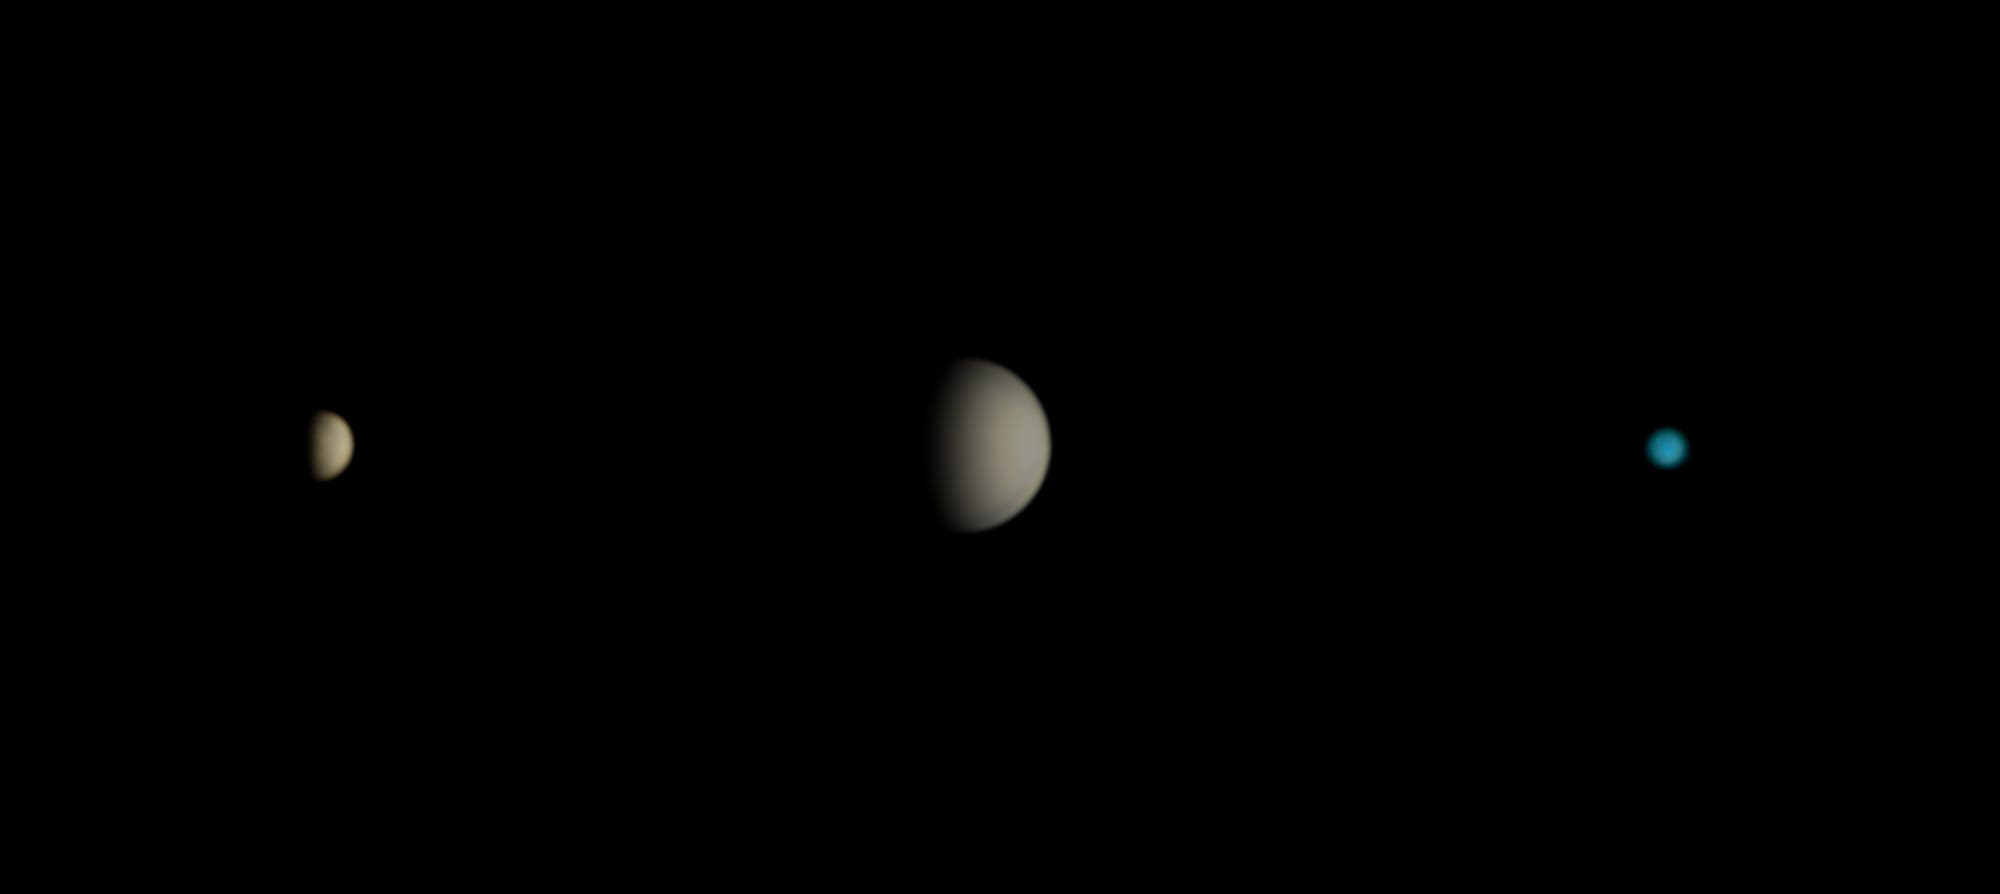 Merkur, Venus und Uranus am 7. Februar 2020